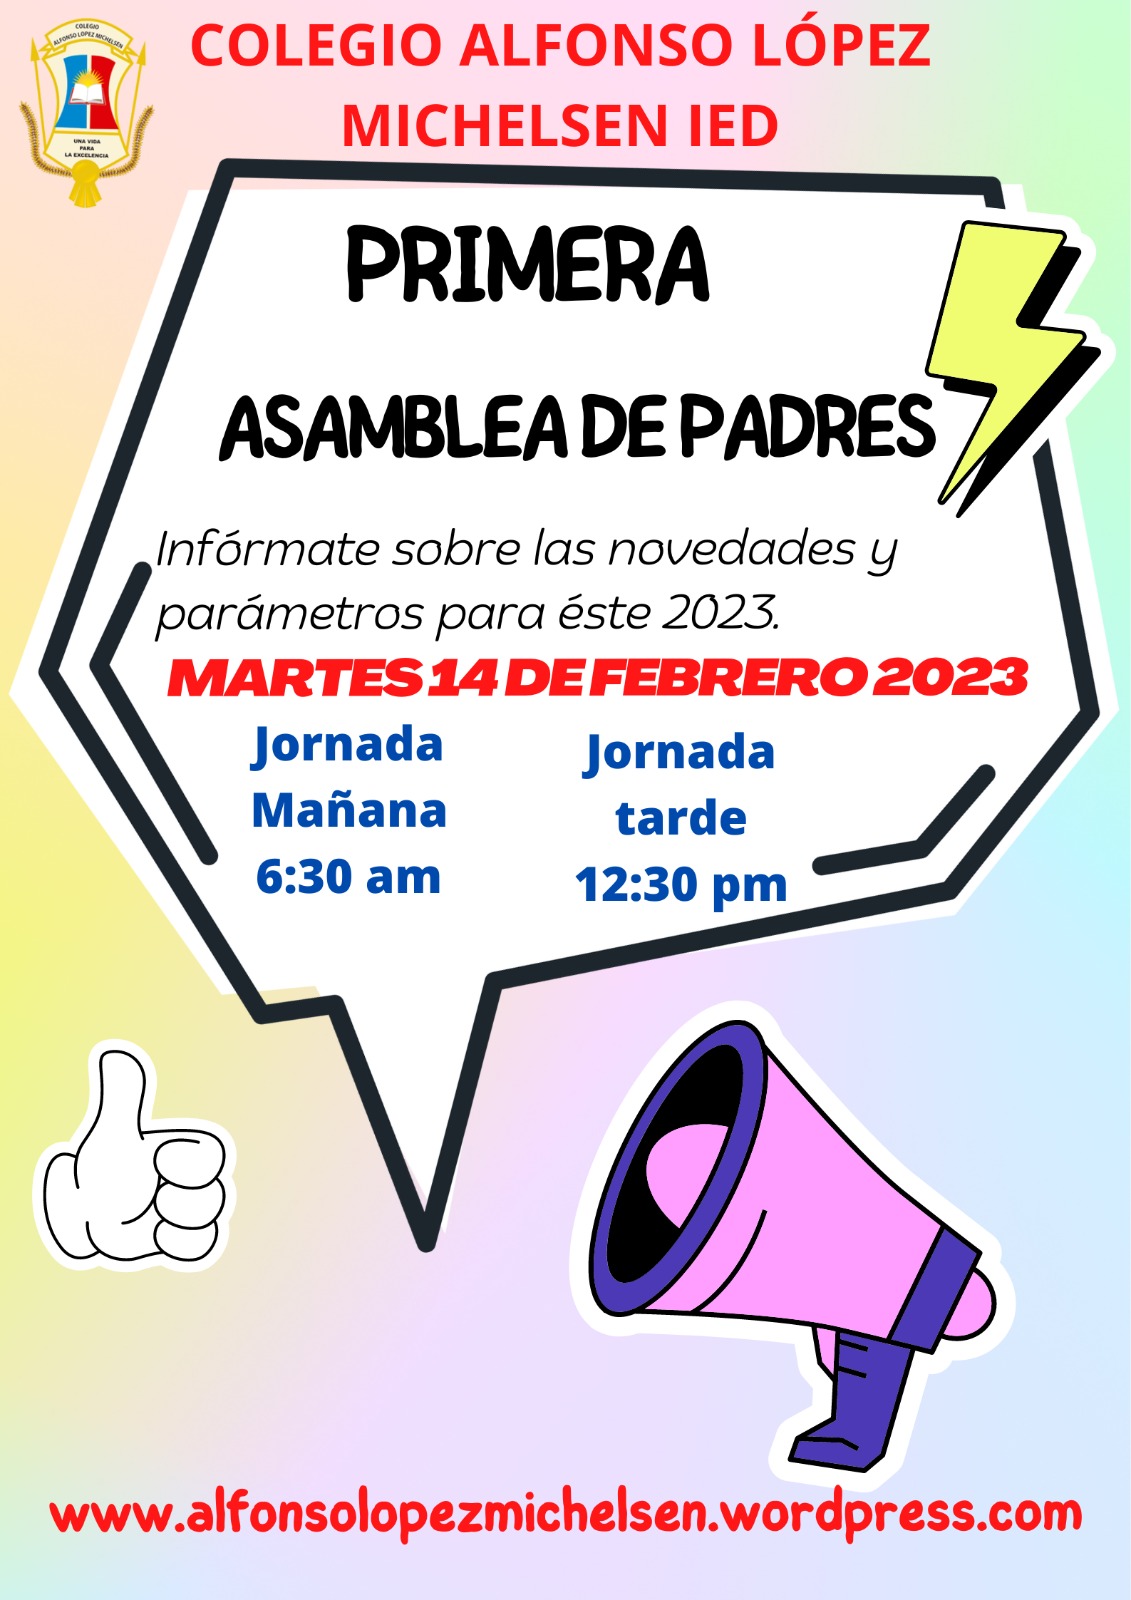 PRIMERA ASAMBLEA DE PADRES 2023